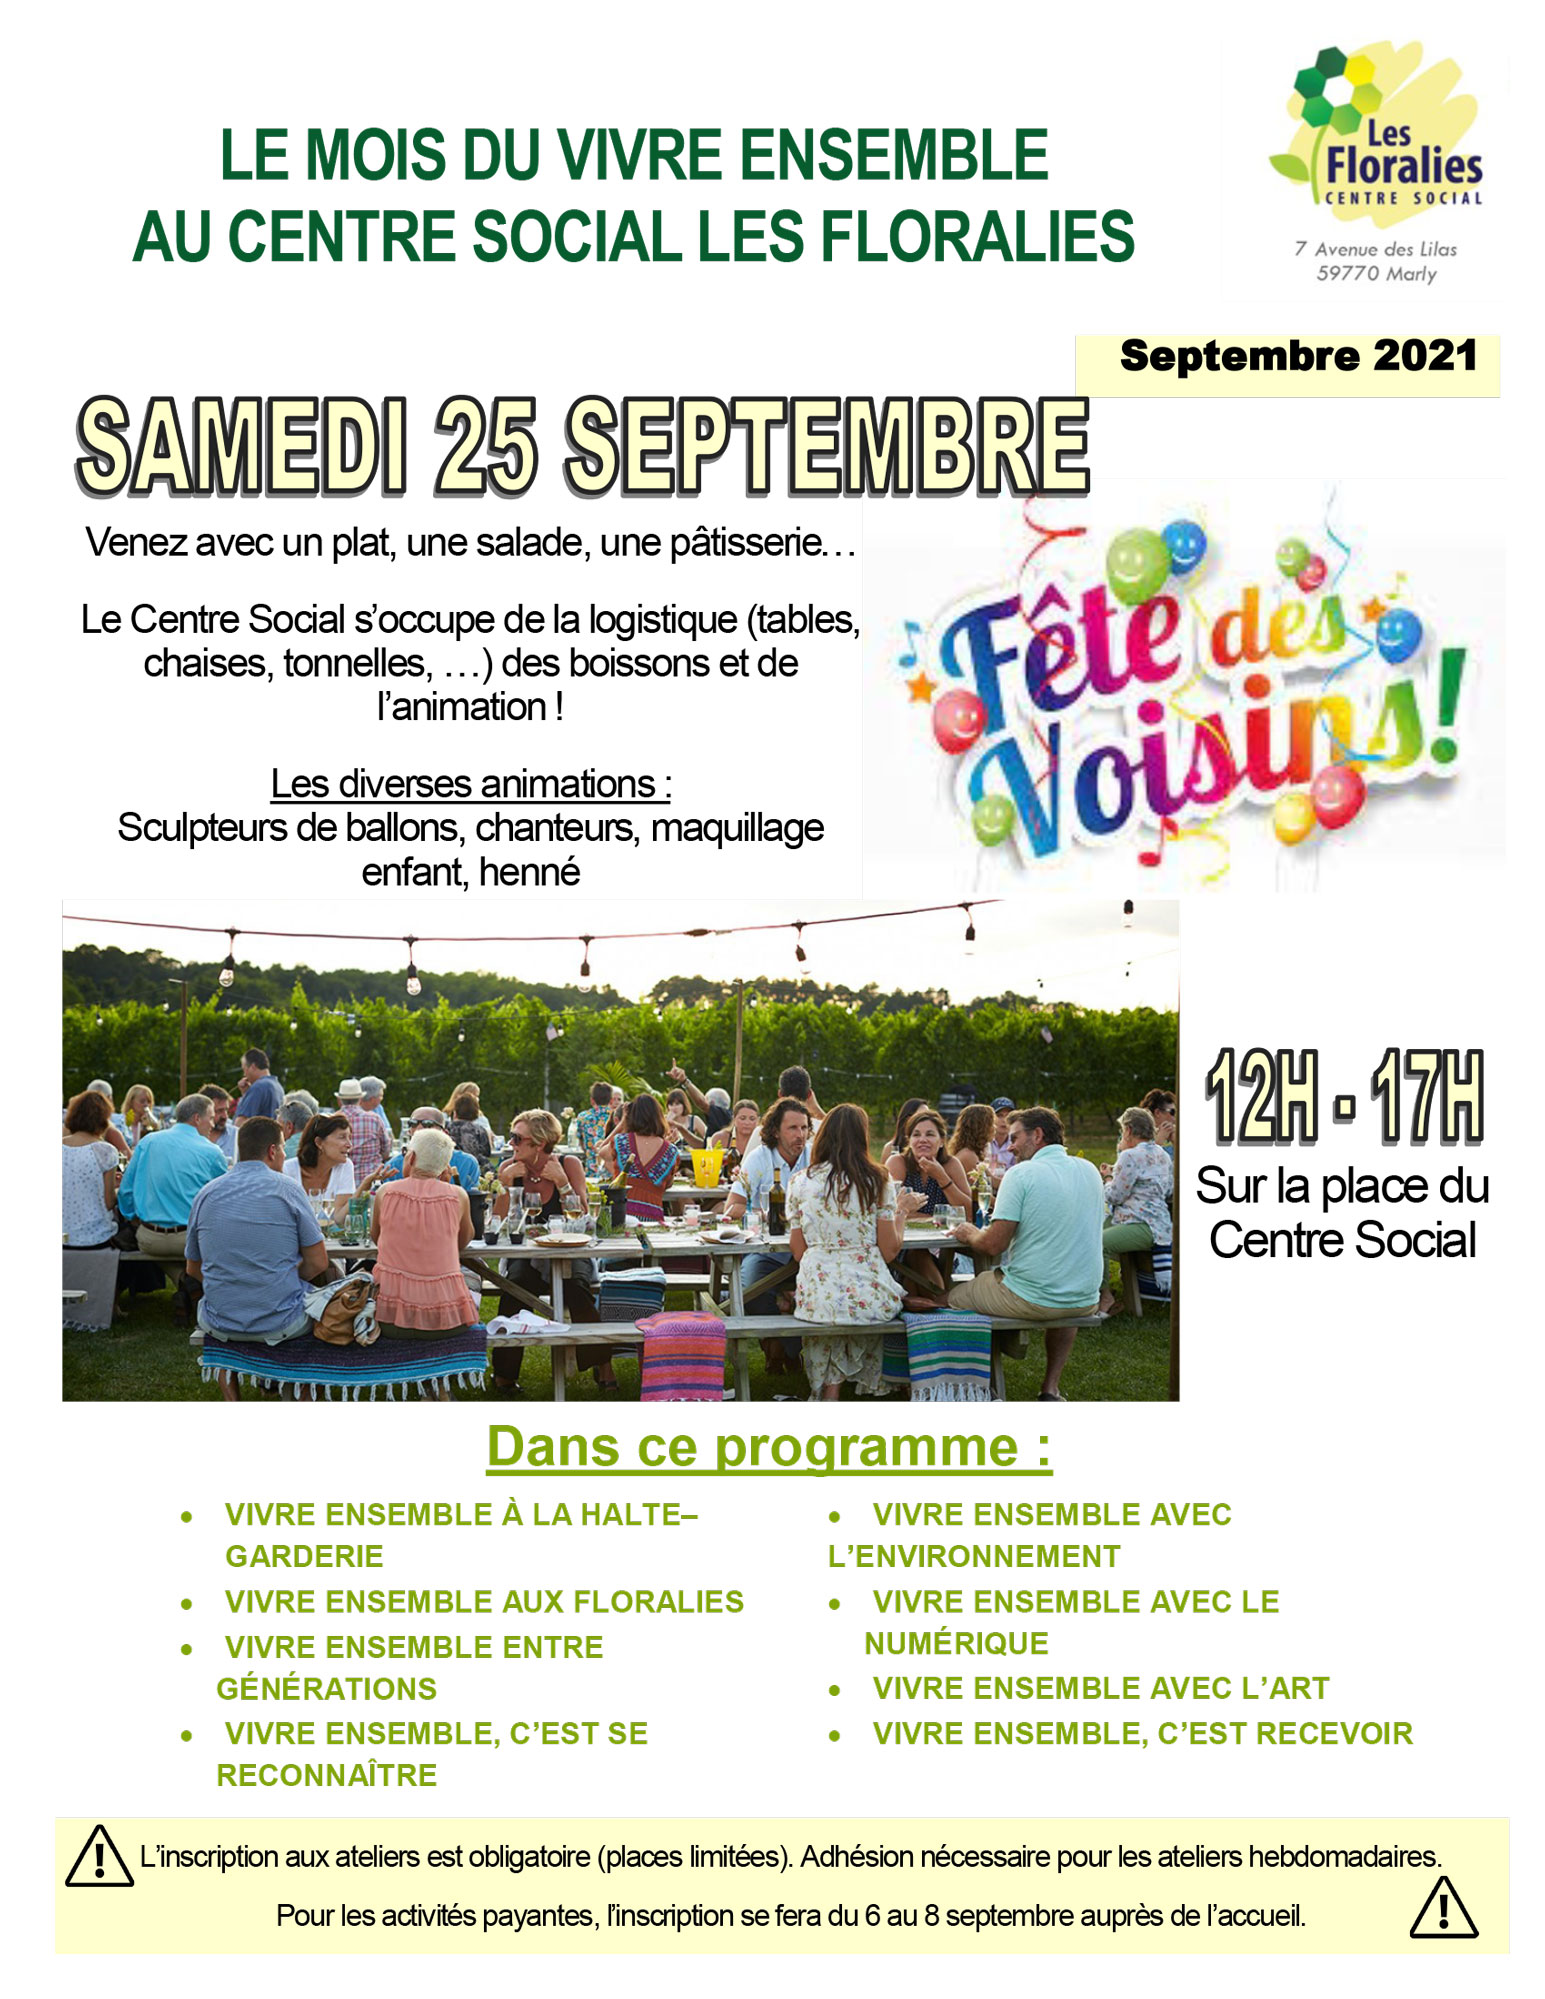 Programme de septembre du Centre Social des Floralies